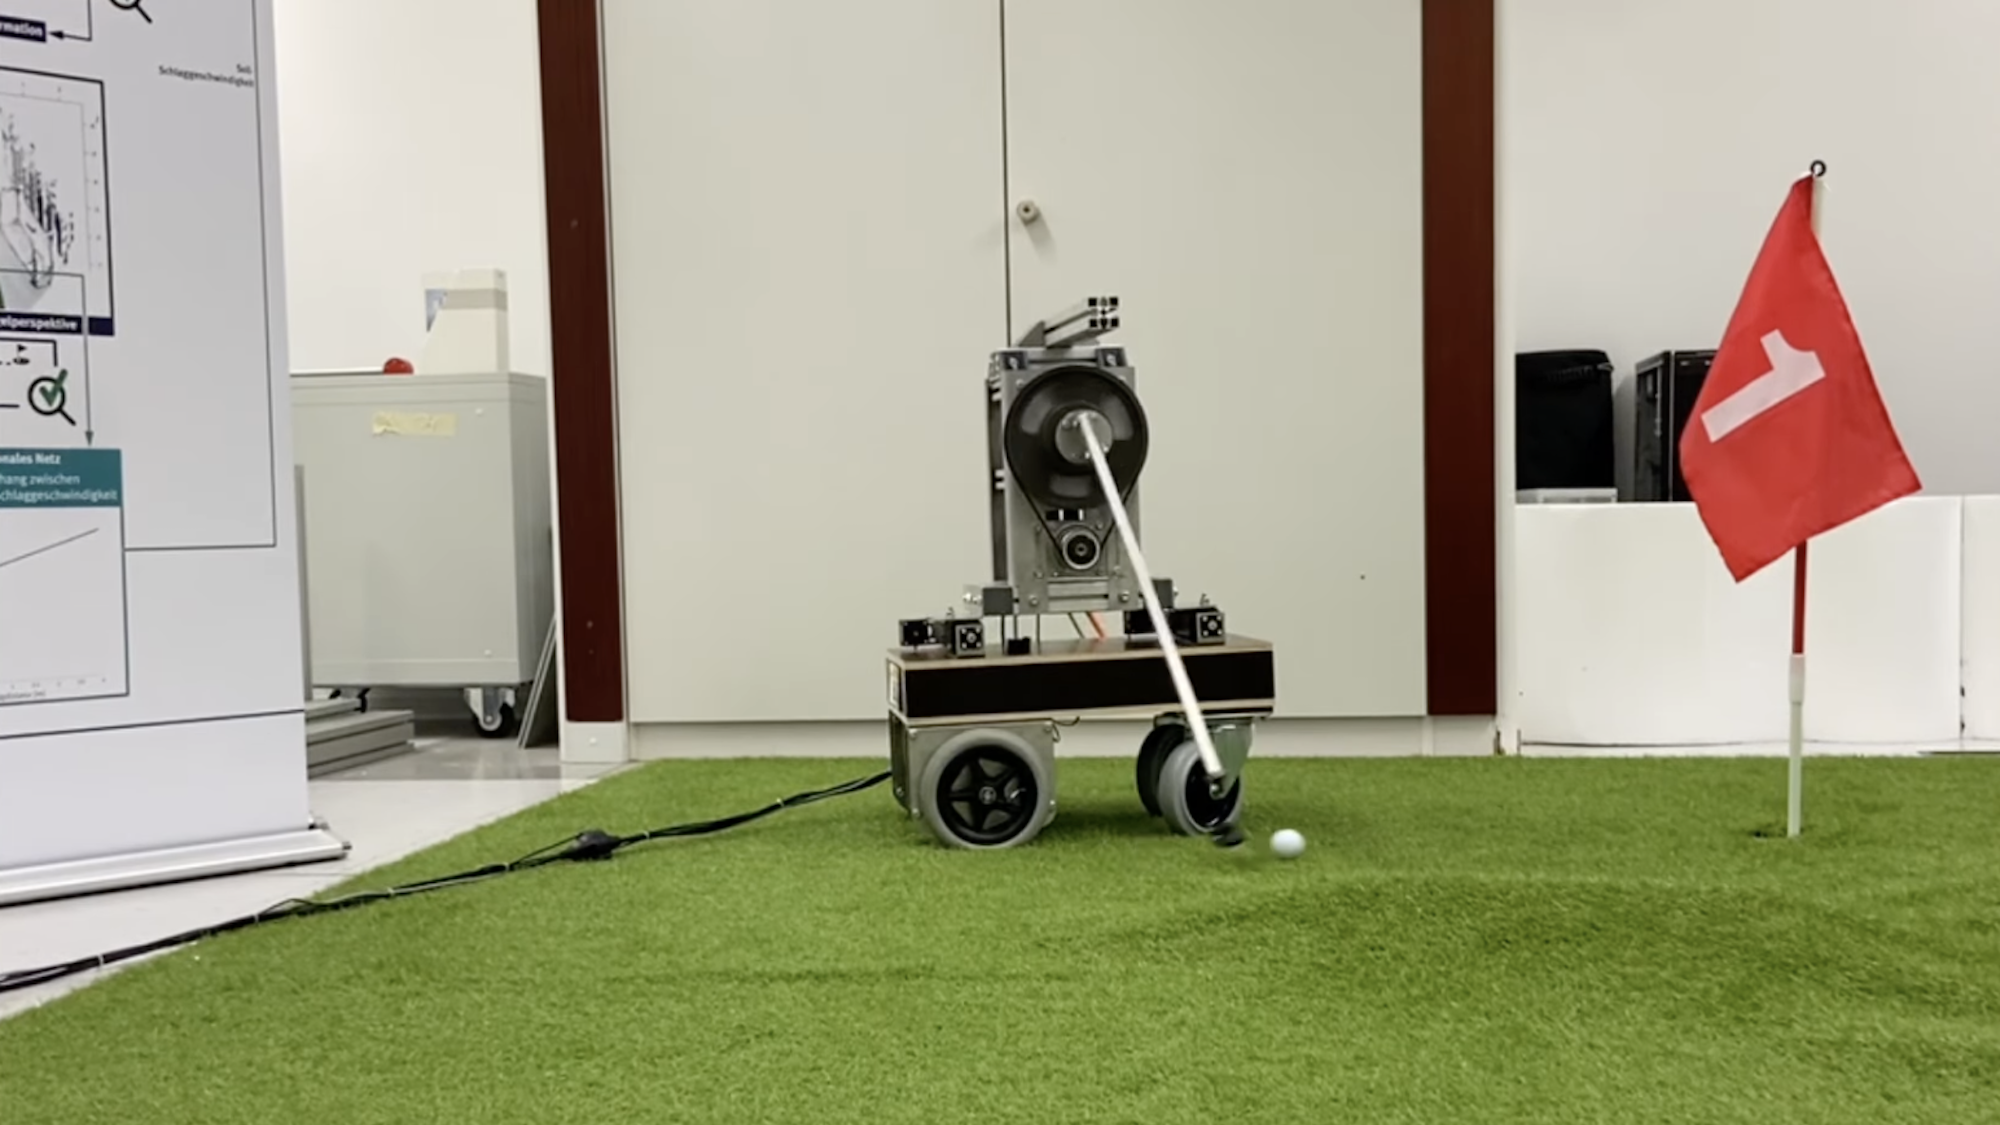 Meet Golfi, the robot that plays putt-putt